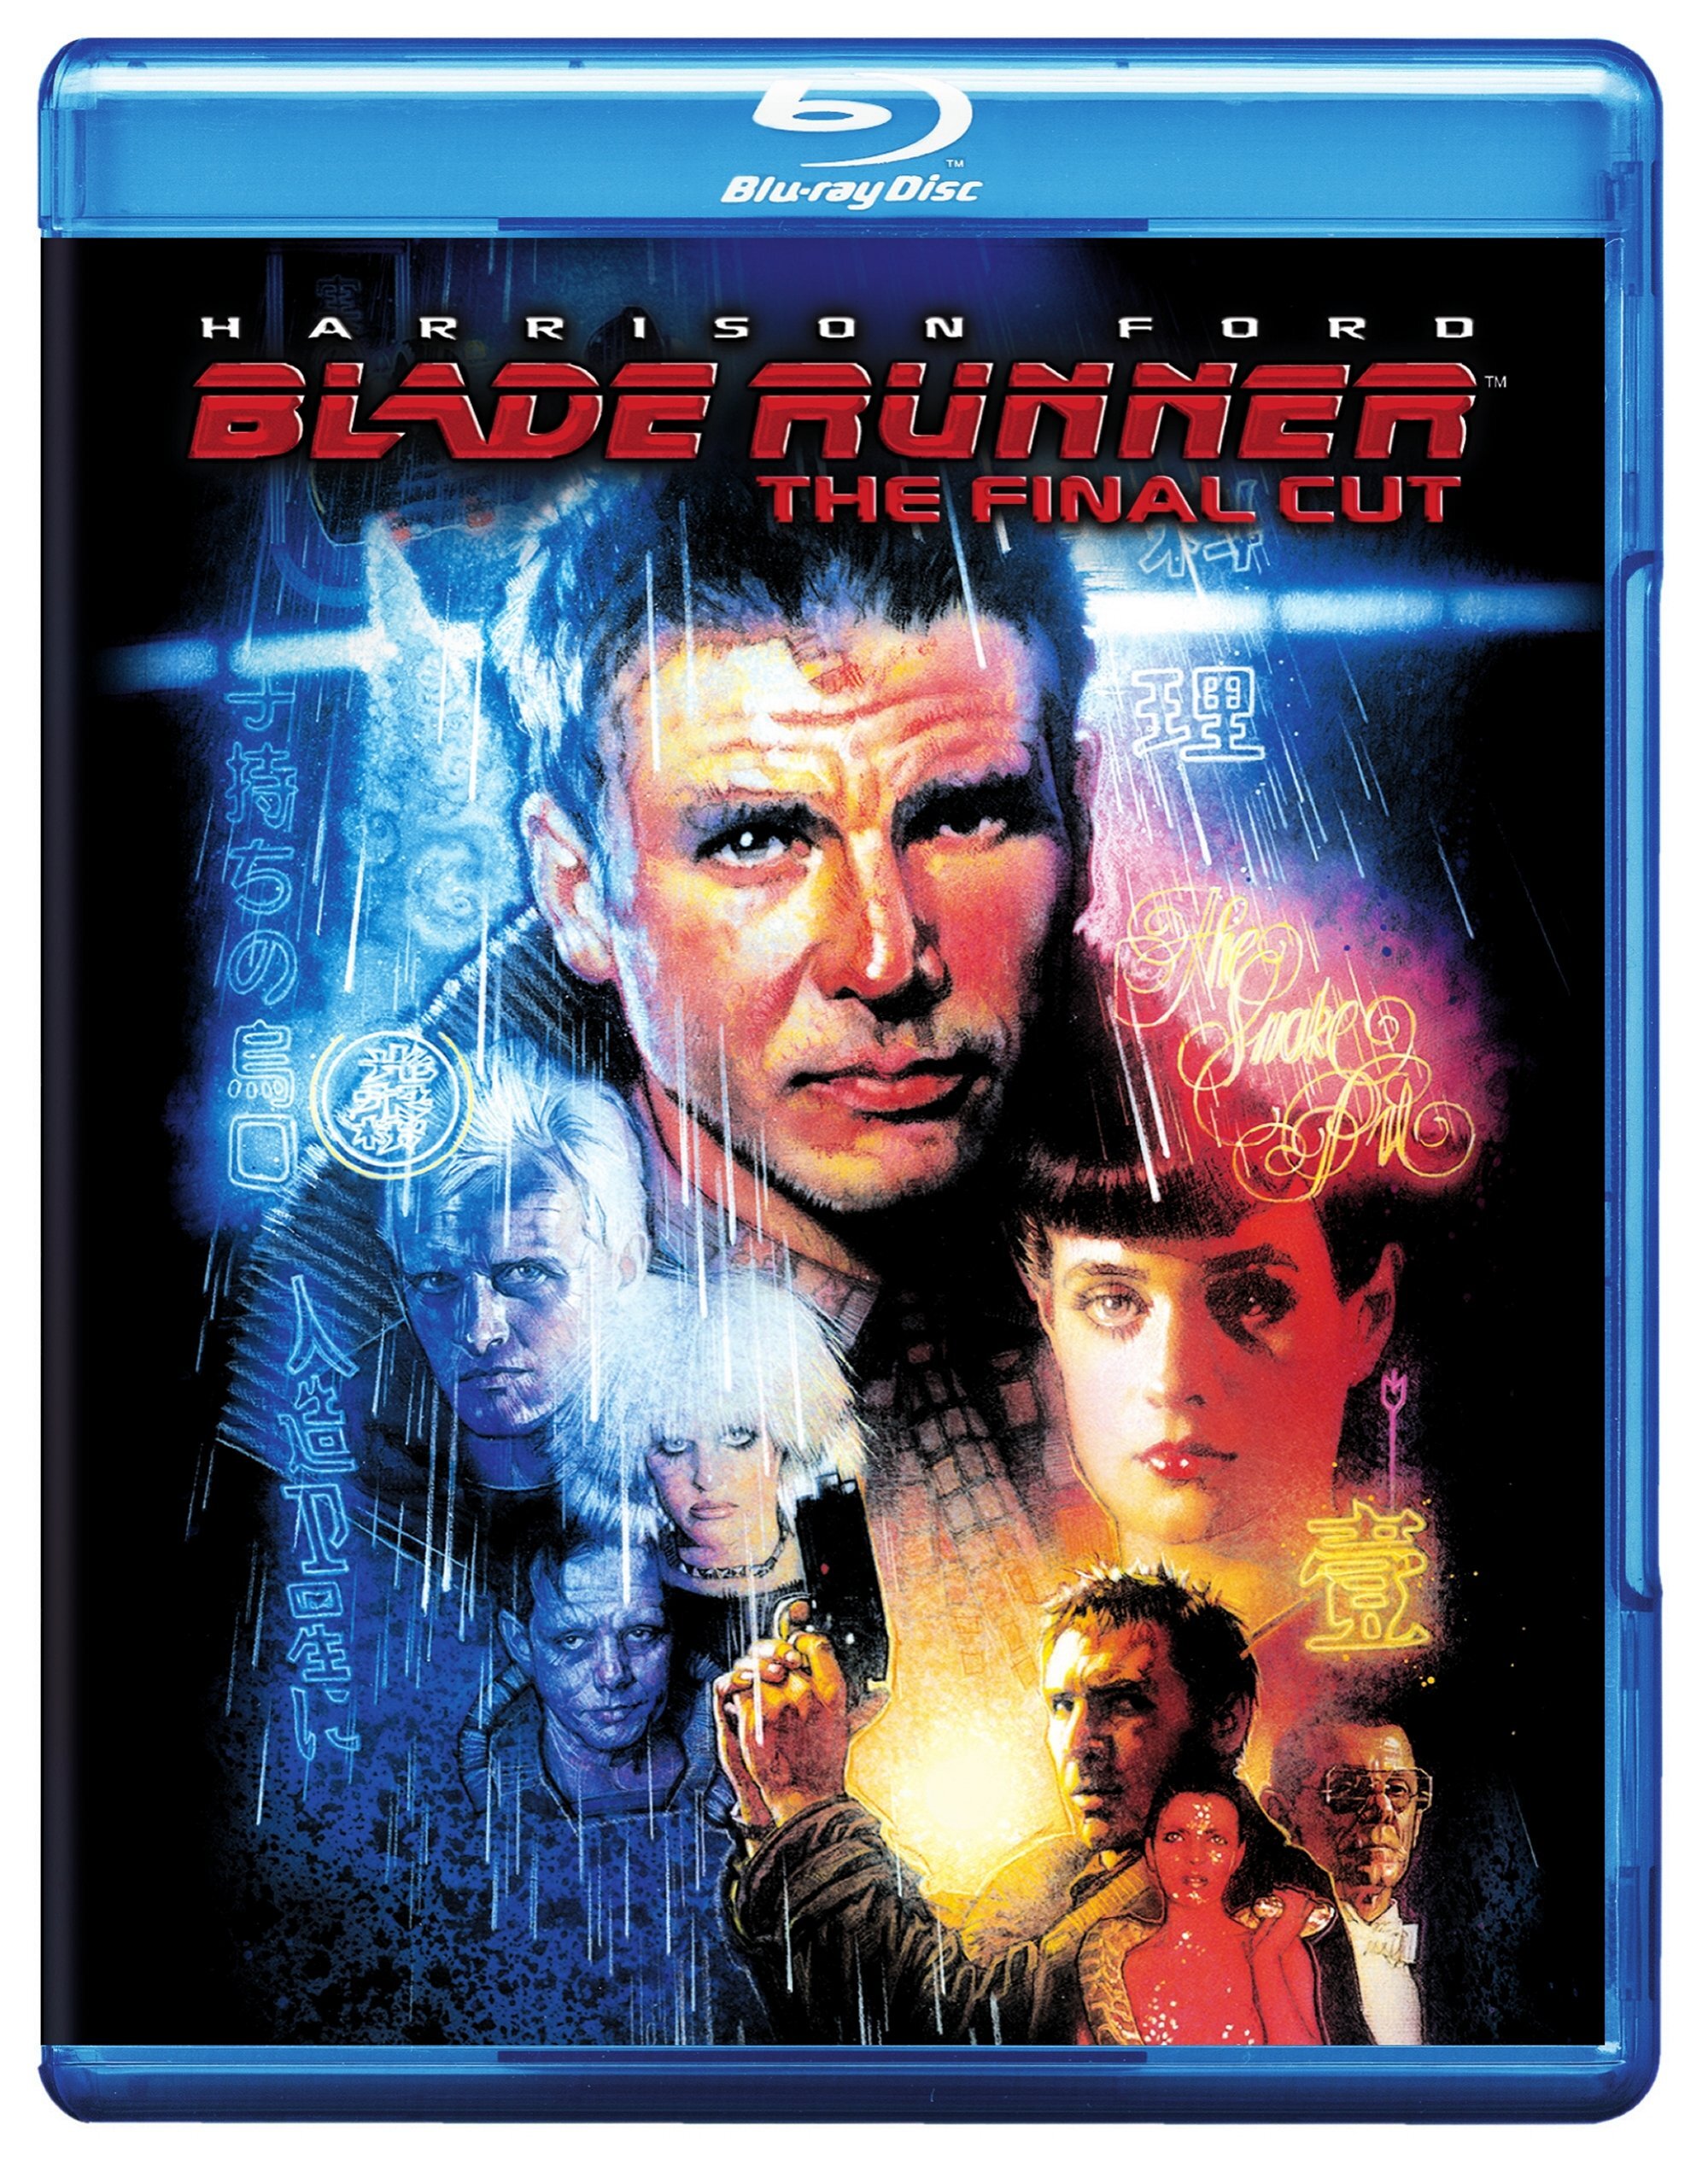 Blade Runner: The Final Cut (Blu-ray Final Cut) - Blu-ray [ 1982 ]  - Sci Fi Movies On Blu-ray - Movies On GRUV